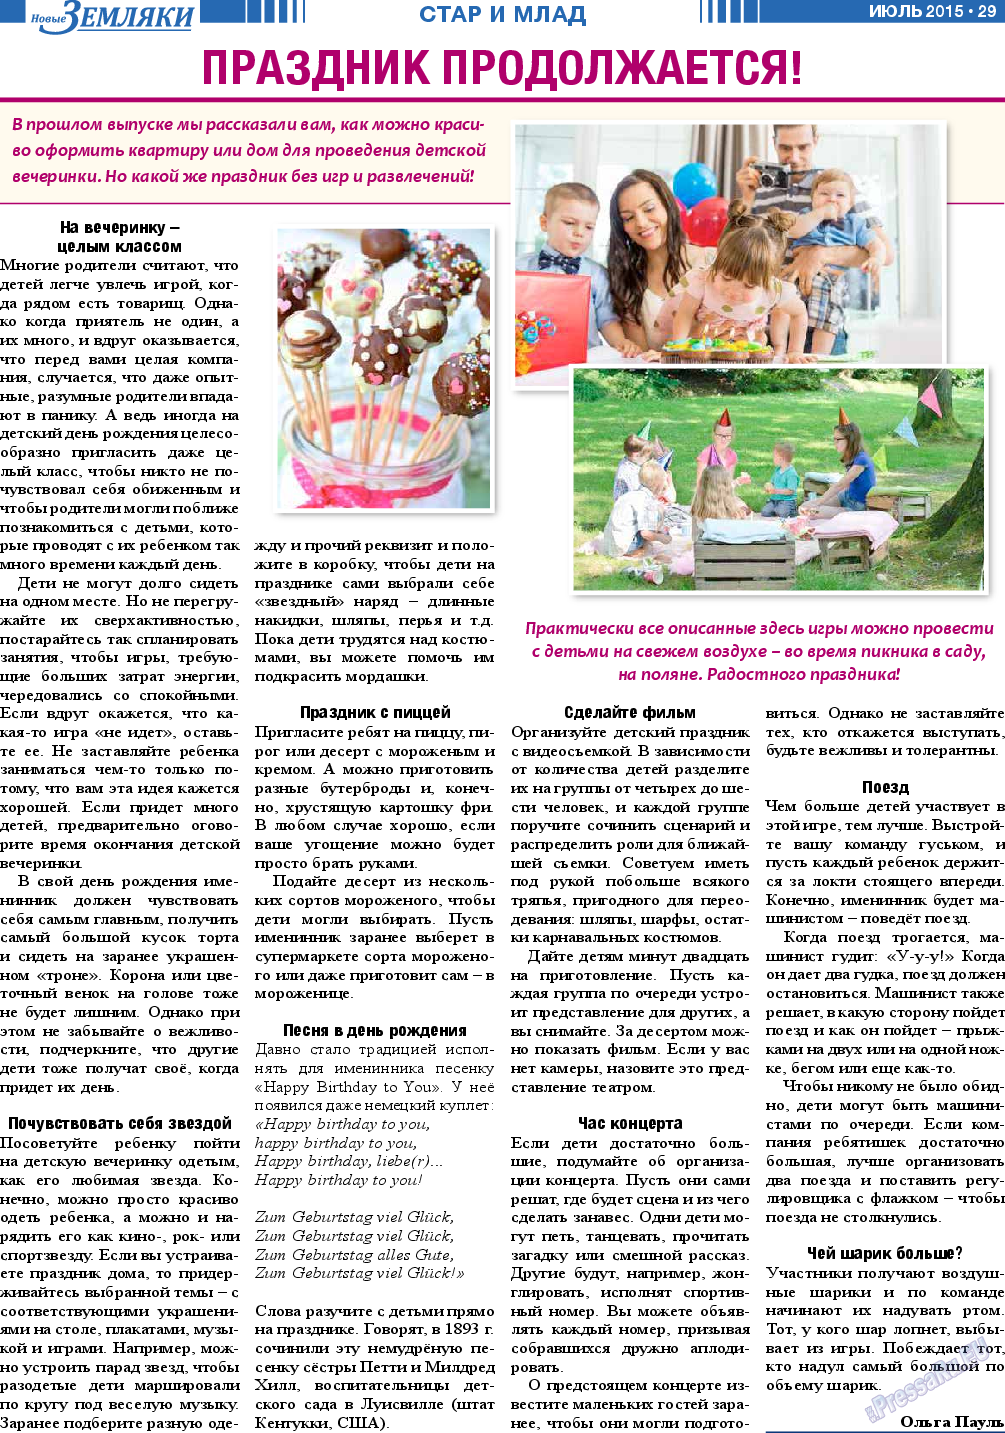 Новые Земляки, газета. 2015 №7 стр.29